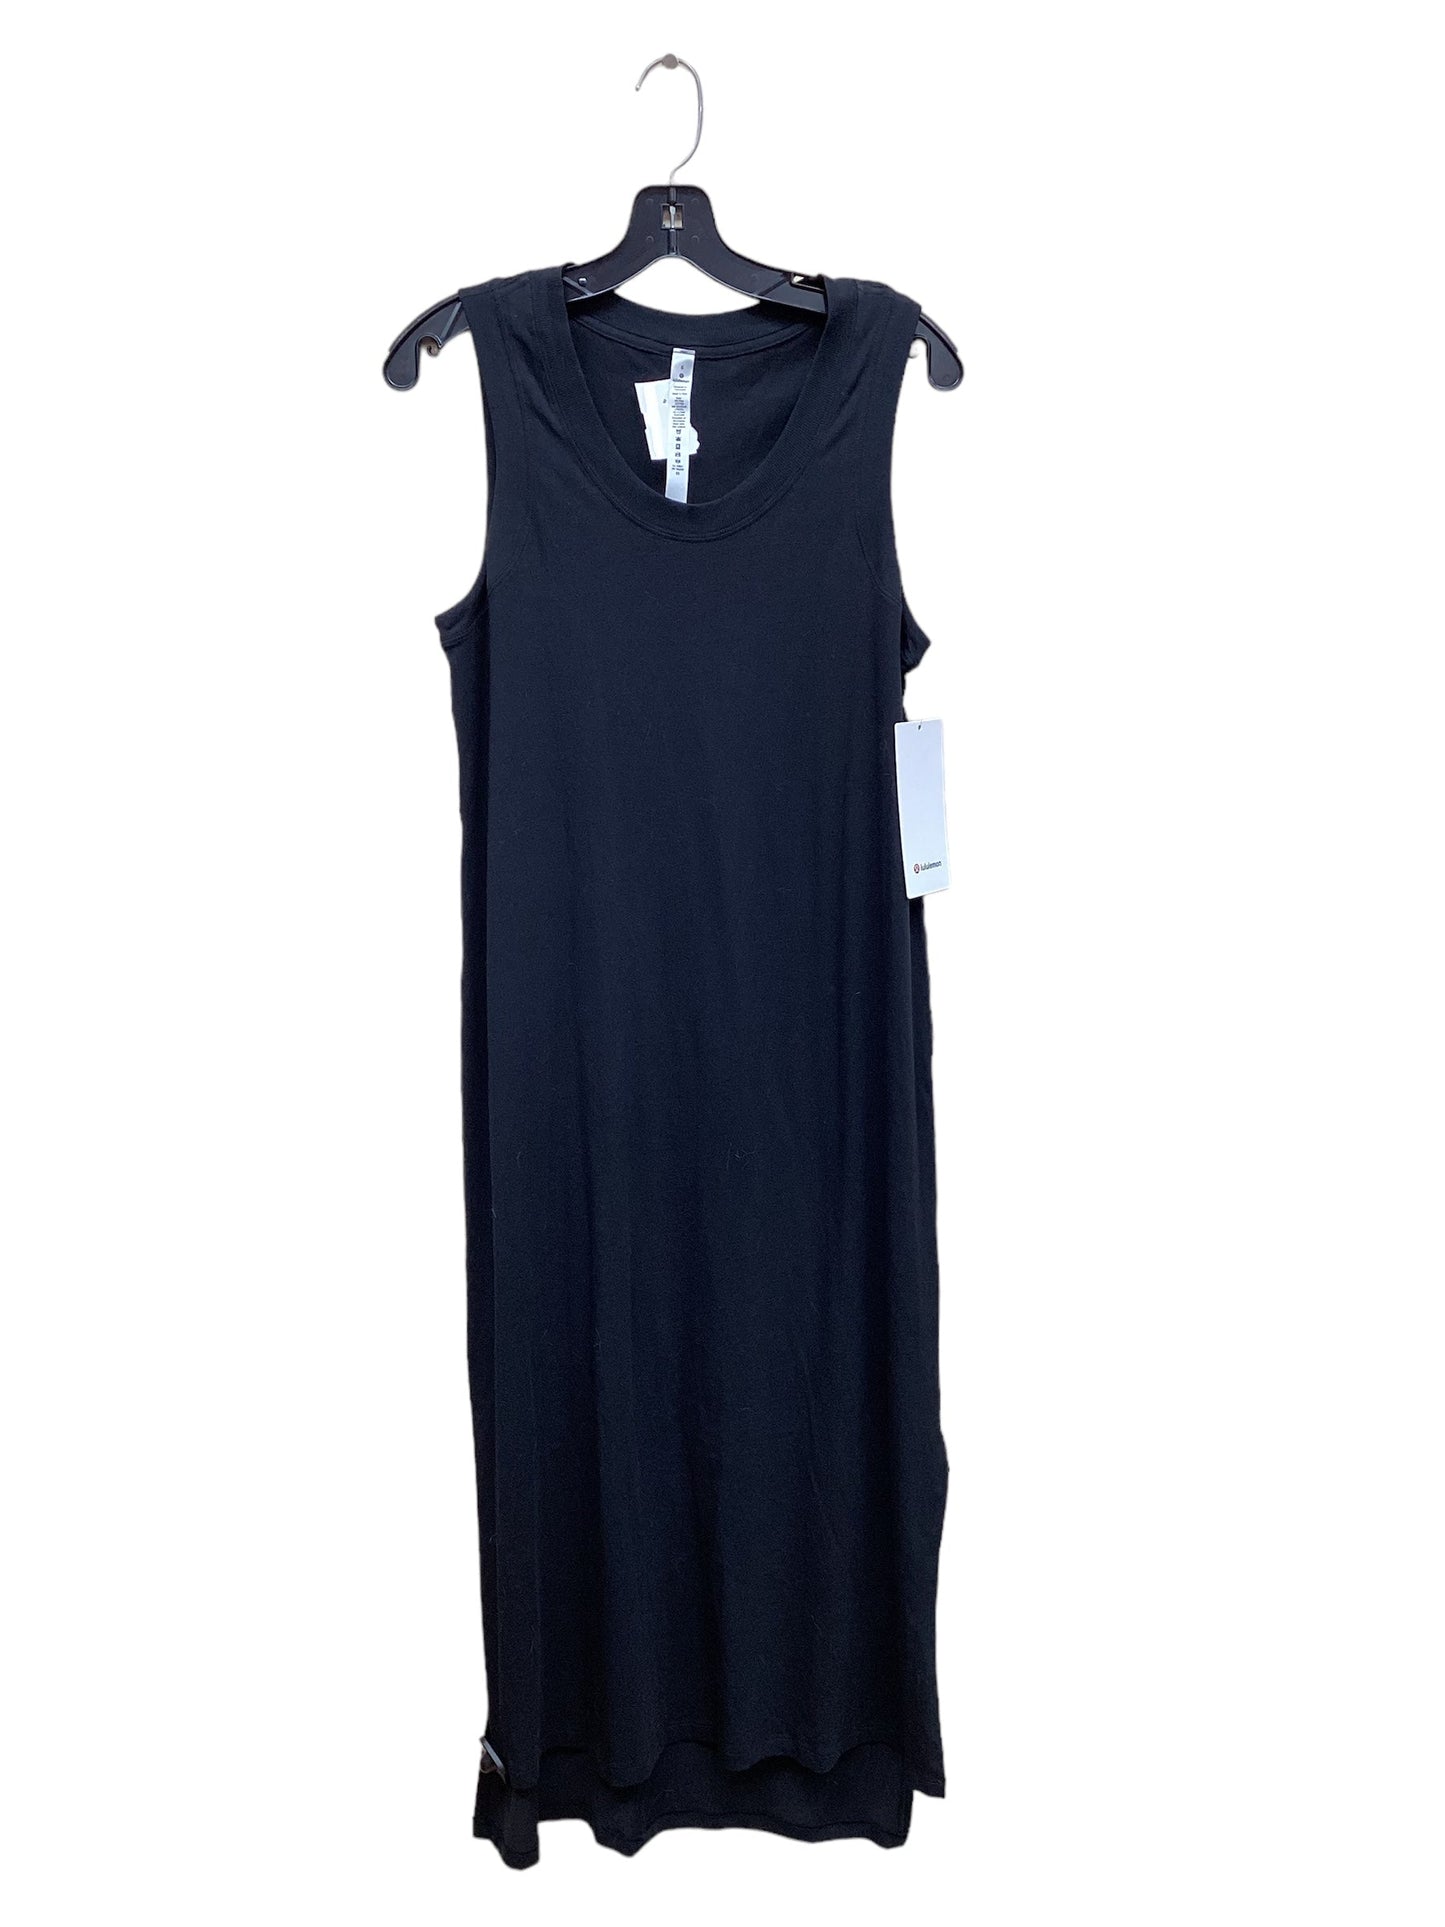 Black Athletic Dress Lululemon, Size 6